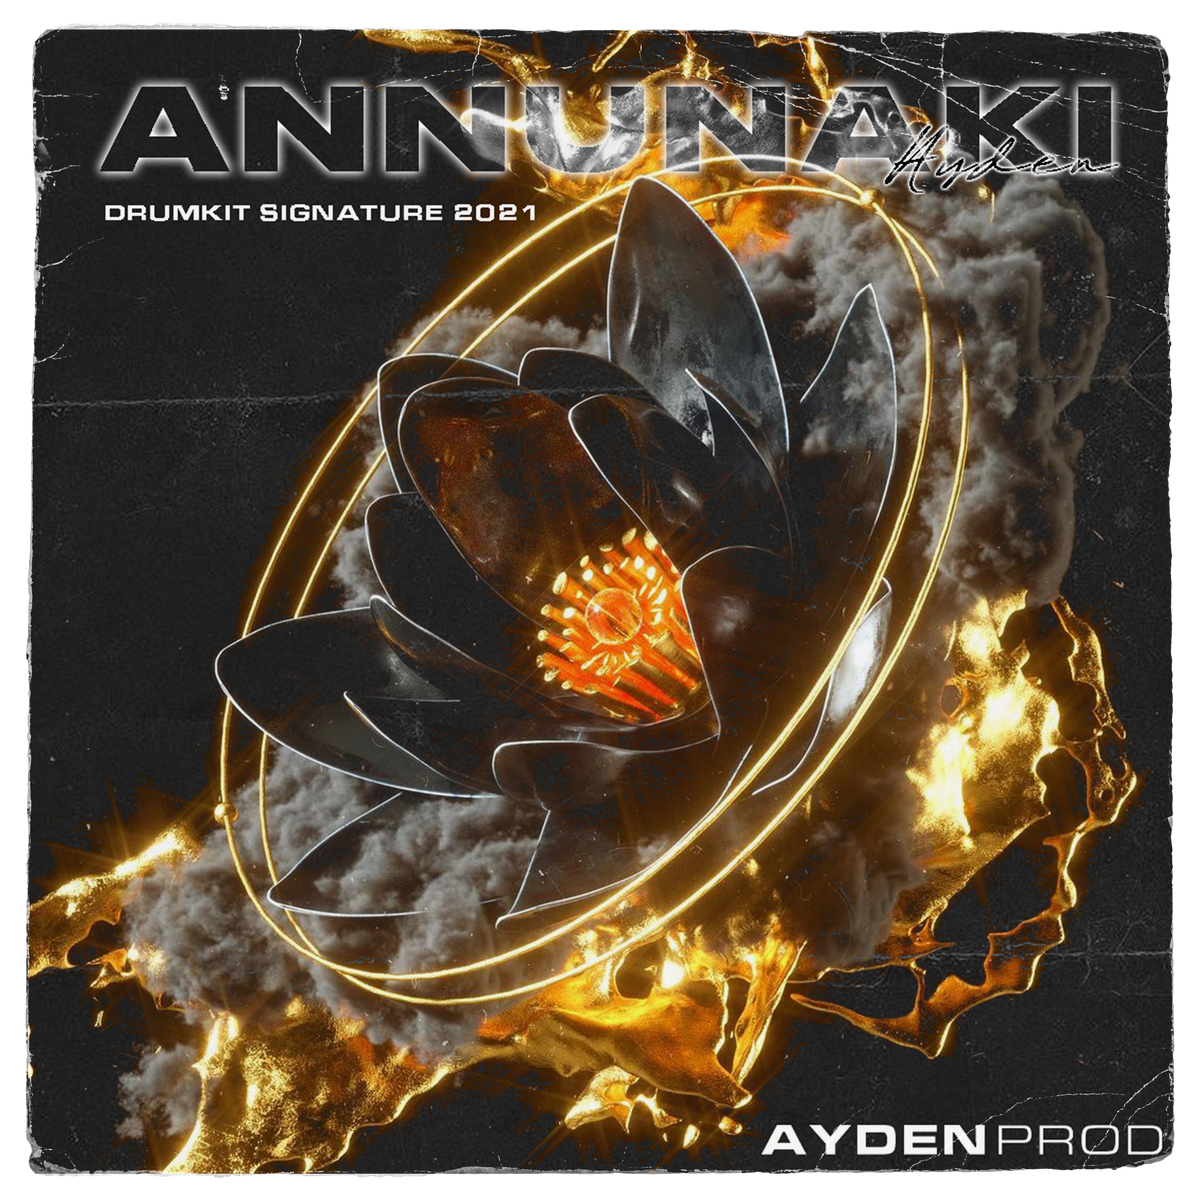 ANNUNAKI - DRUMKIT SIGNATURE 2021 By AYDEN PROD